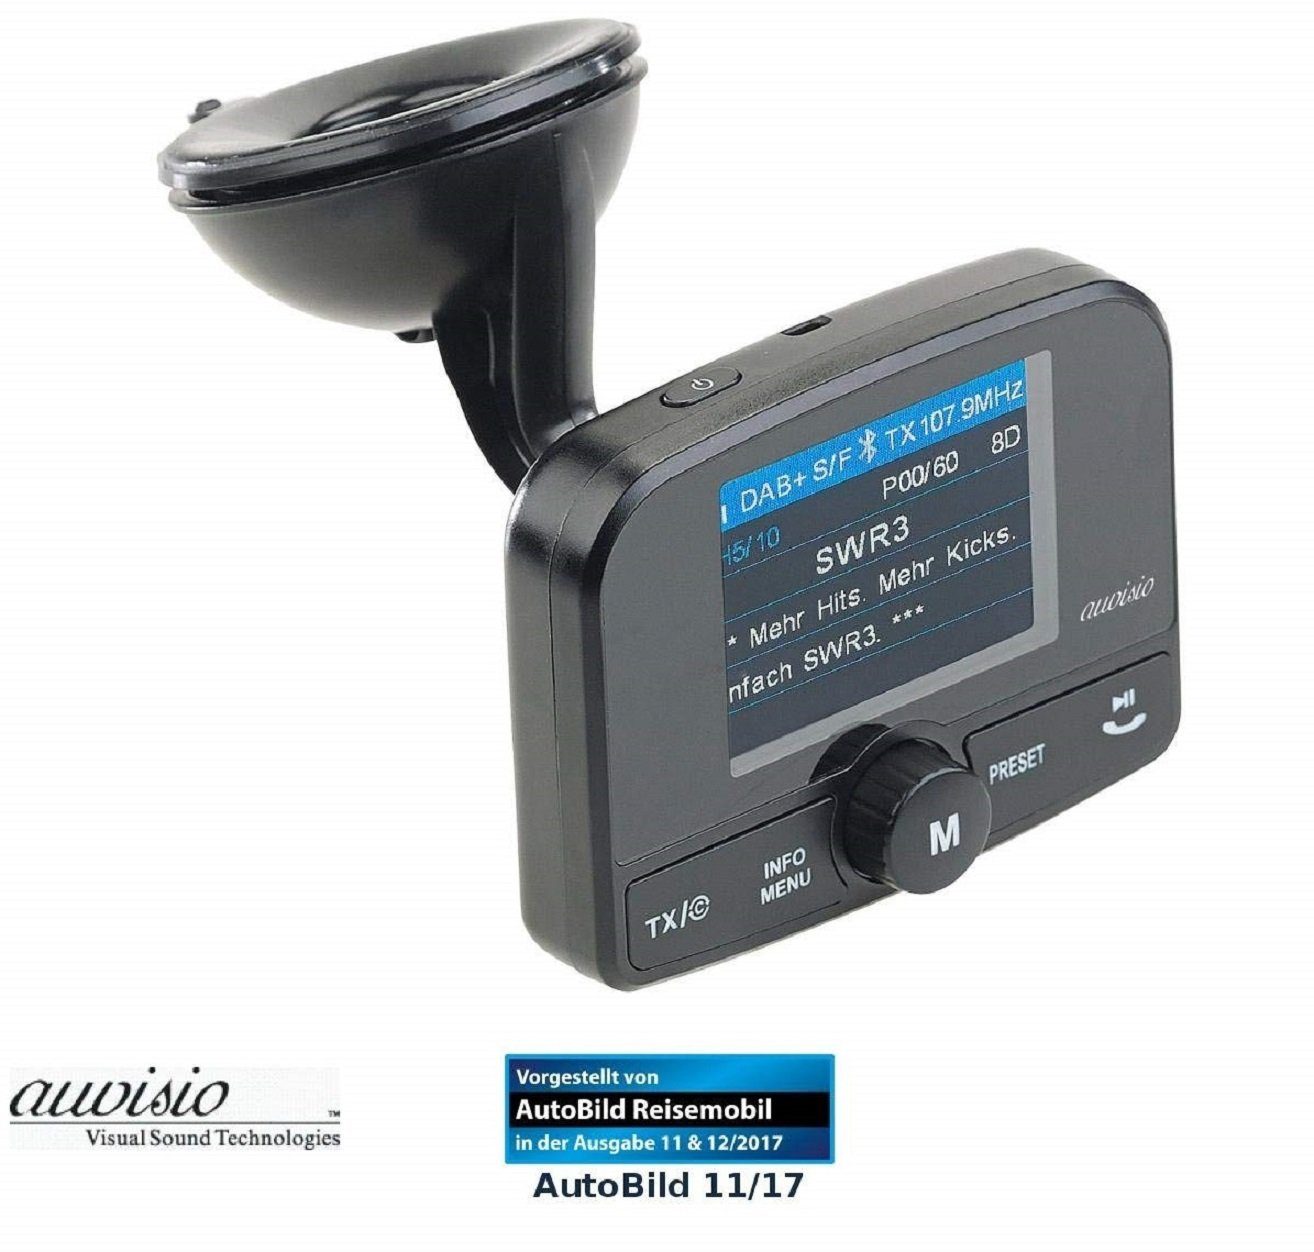 auvisio FMX-640.dab 3,5-mm-Klinke, Micro-SD FM-Transmitter per Freisprechen Micro-USB, Bluetooth zu von Audio-Übertragung MP3 UKW-Signal microSD-Karte, Wiedergabe Empfänger Micro-USB, KFZ-Transmitter Kfz-DAB